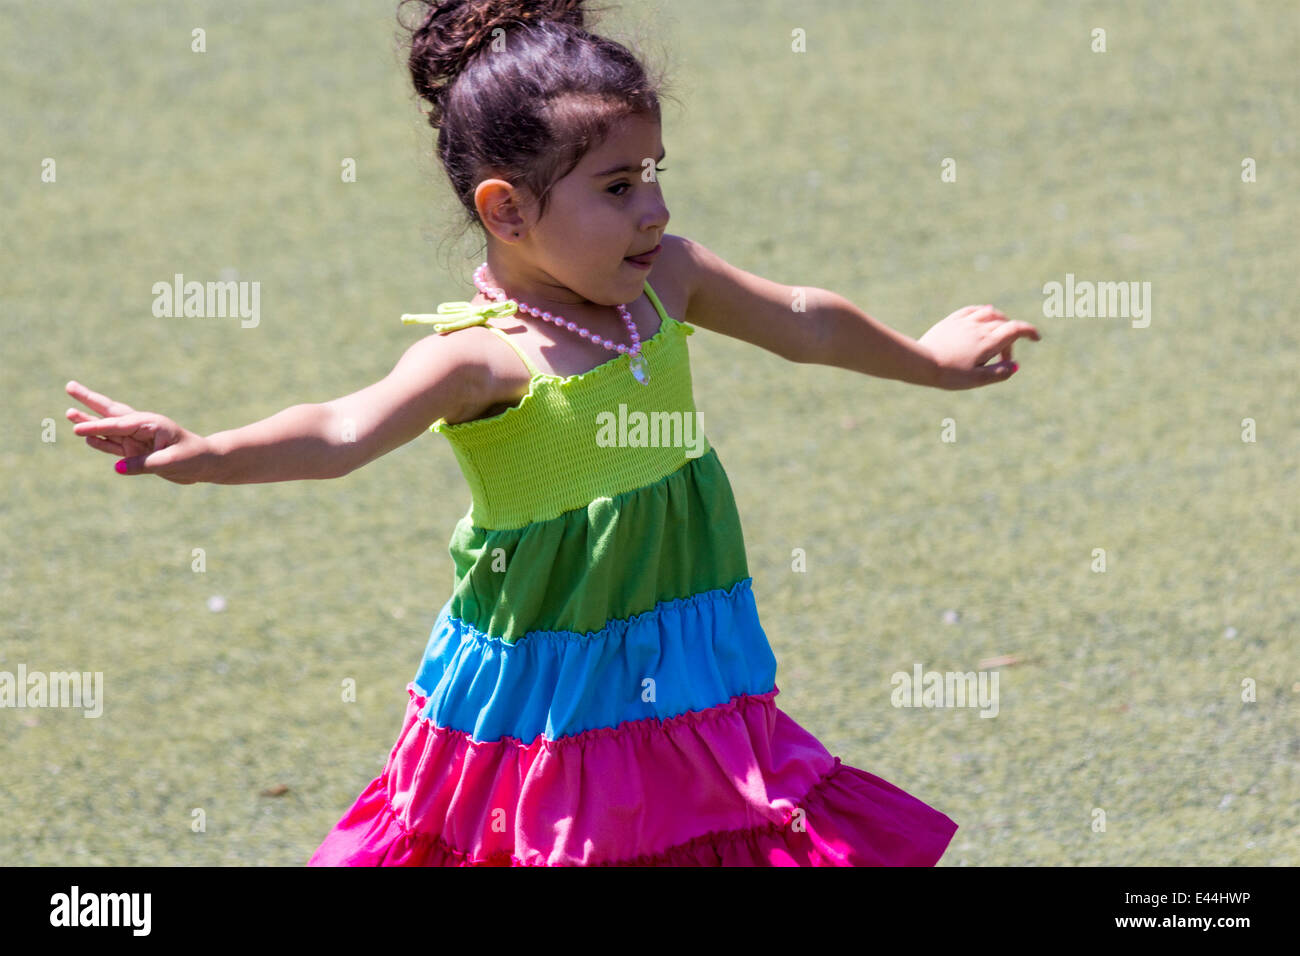 Petite fille danse sur l'herbe avec sa langue qui sort Banque D'Images